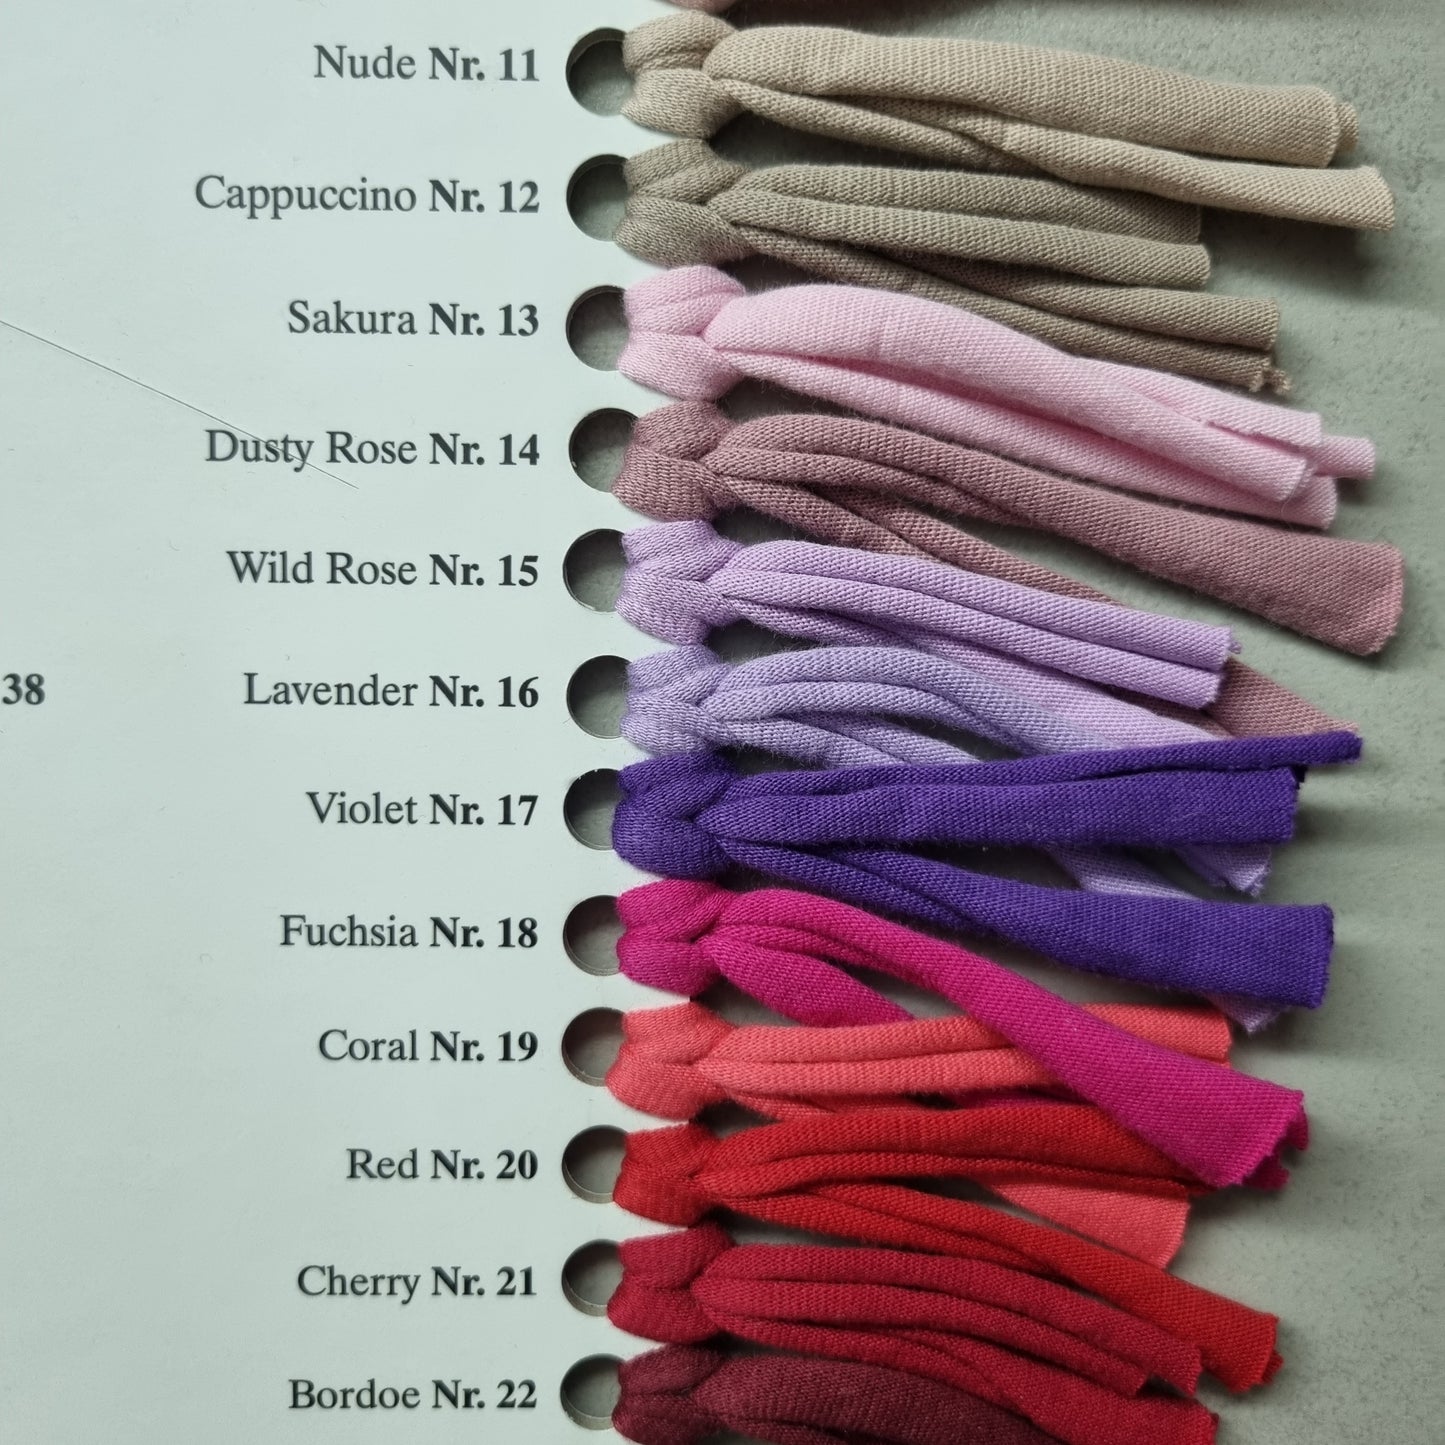 Premium Textilgarn T-Shirt Garn in Rollen 100% Baumwolle 100-120m Lauflänge mit